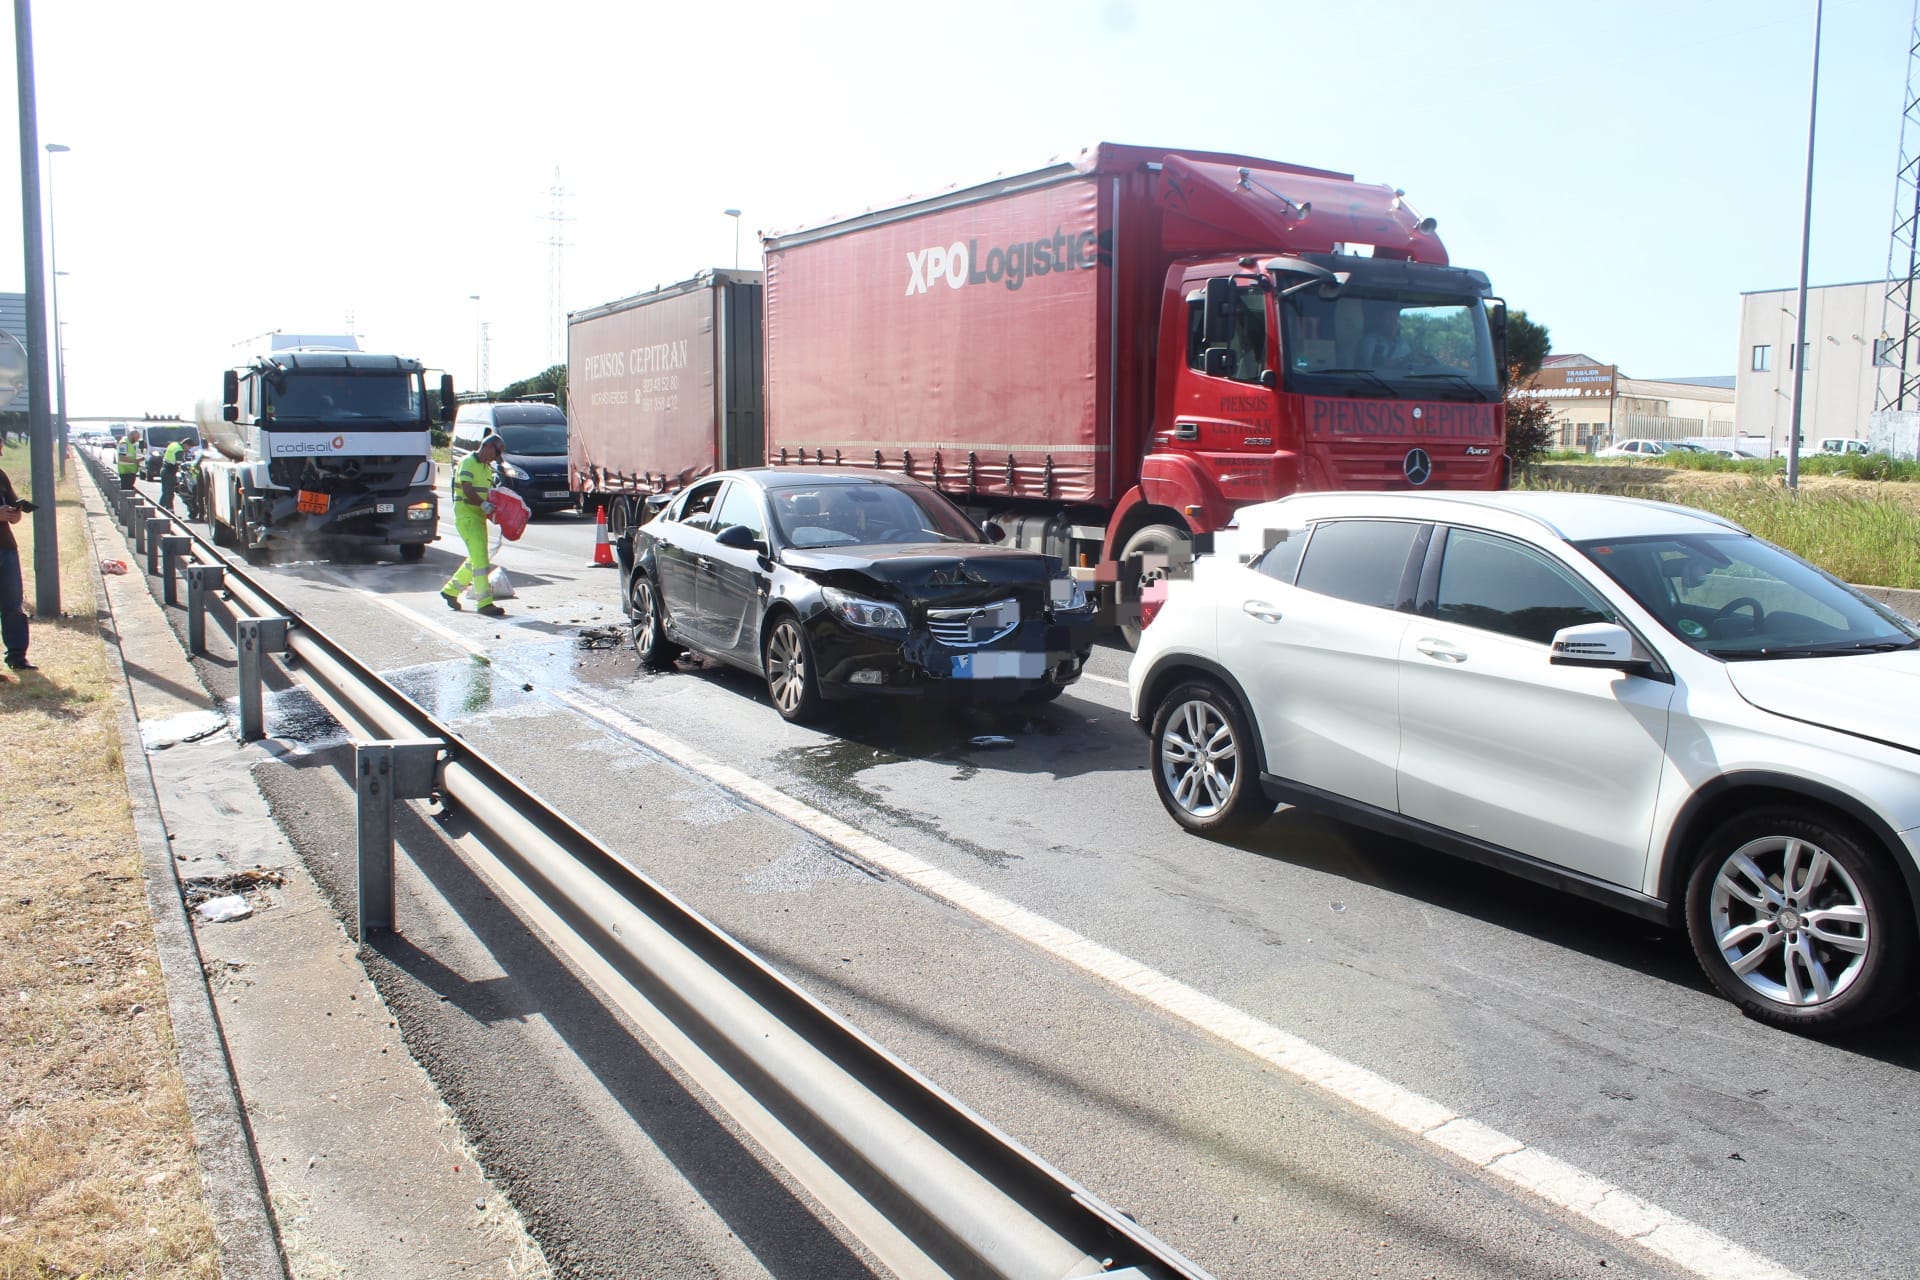 Tres vehículos implicados en un accidente en Carbajosa de la Sagrada. Fotos Carlos H. G